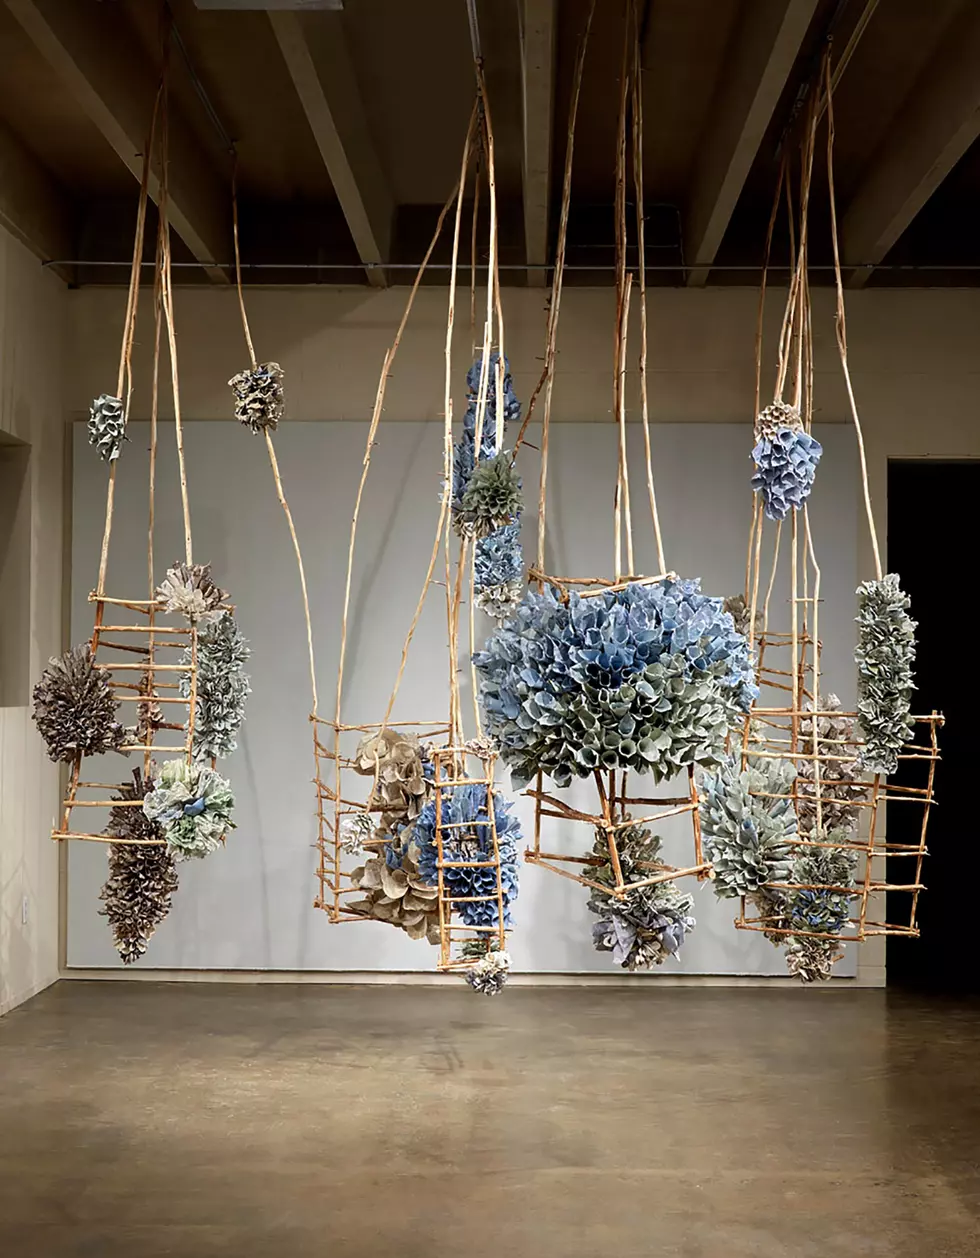 ‘Tranquil Bloom’ Exhibit Opens Sept. 21 at Daum Museum